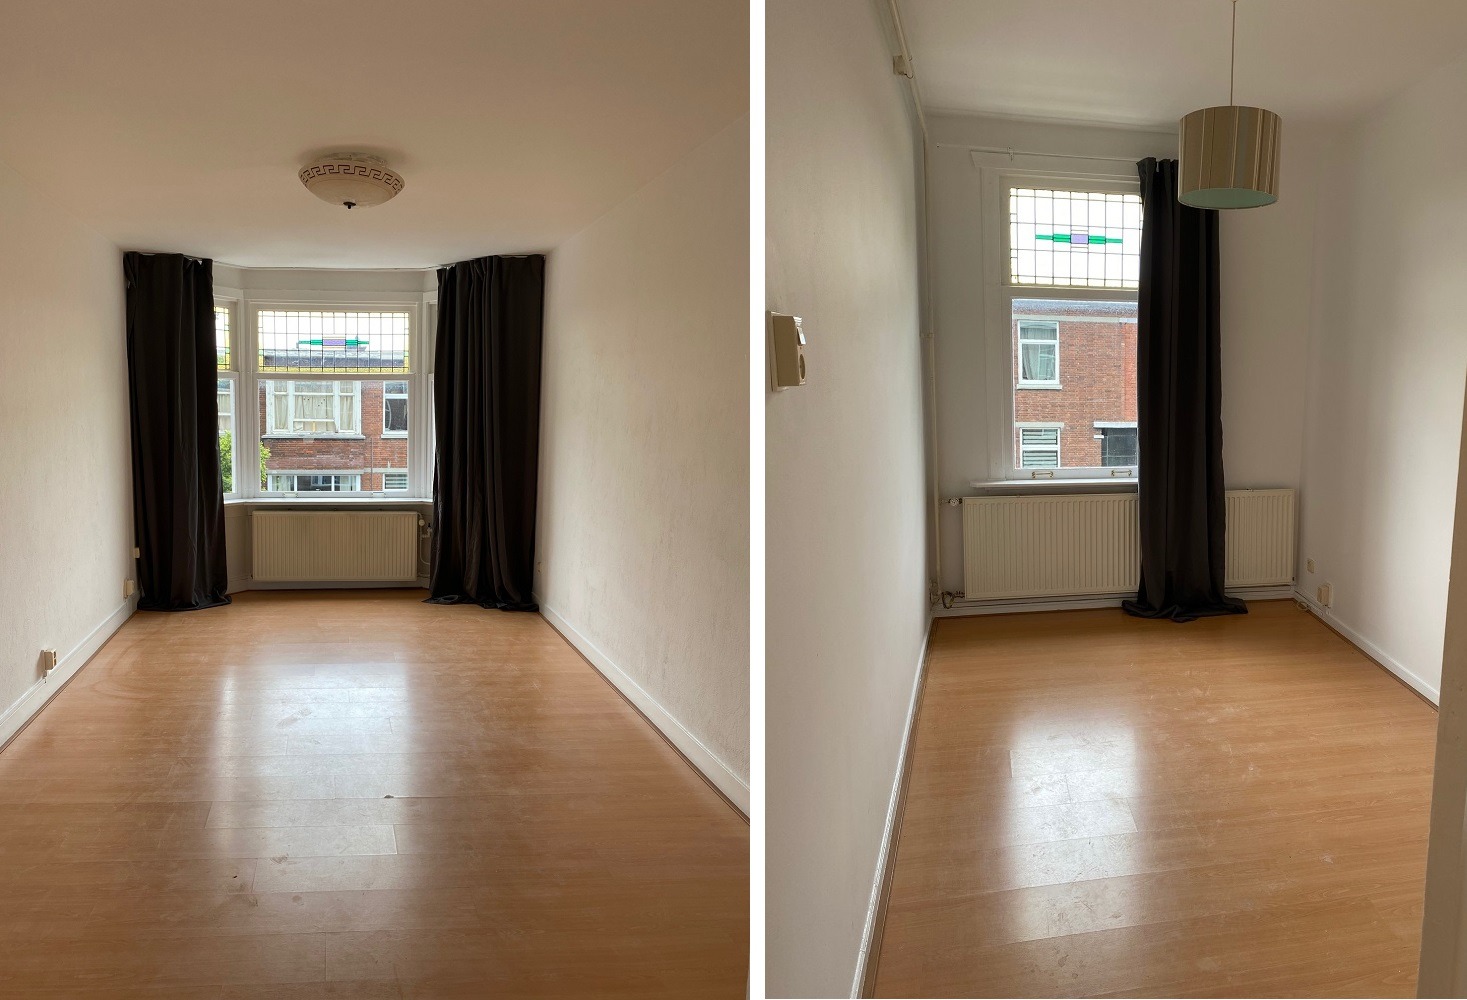 Woning / appartement - Den Haag - Linnaeusstraat 156